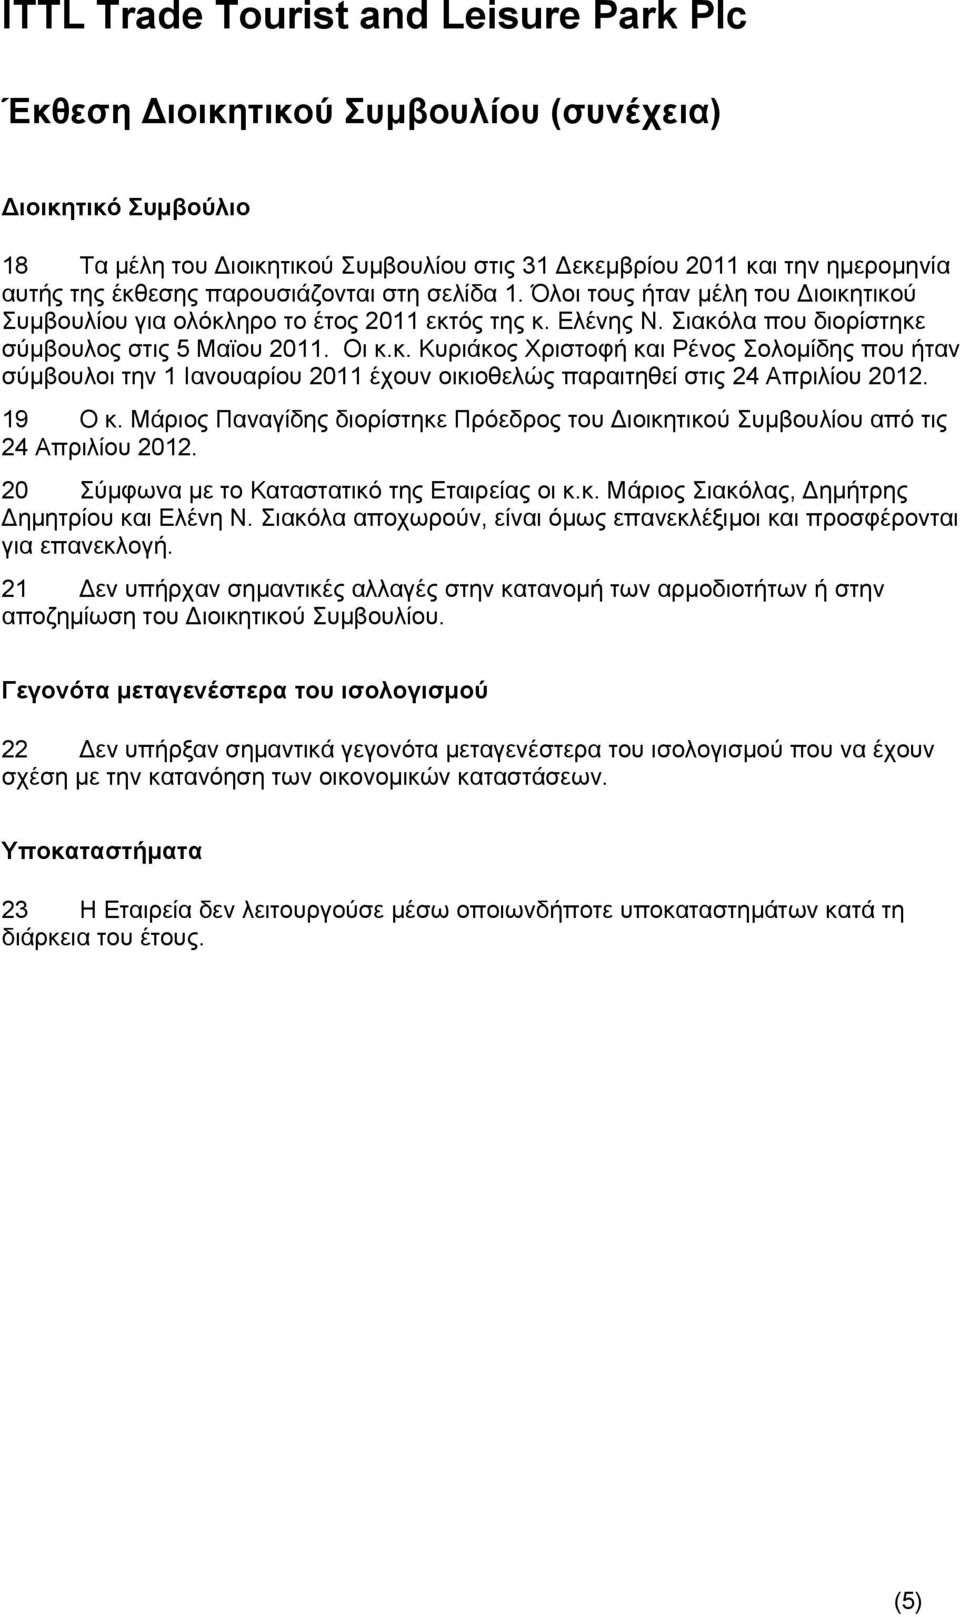 19 Ο κ. Μάριος Παναγίδης διορίστηκε Πρόεδρος του Διοικητικού Συμβουλίου από τις 24 Απριλίου 2012. 20 Σύμφωνα με το Καταστατικό της Εταιρείας οι κ.κ. Μάριος Σιακόλας, Δημήτρης Δημητρίου και Ελένη Ν.